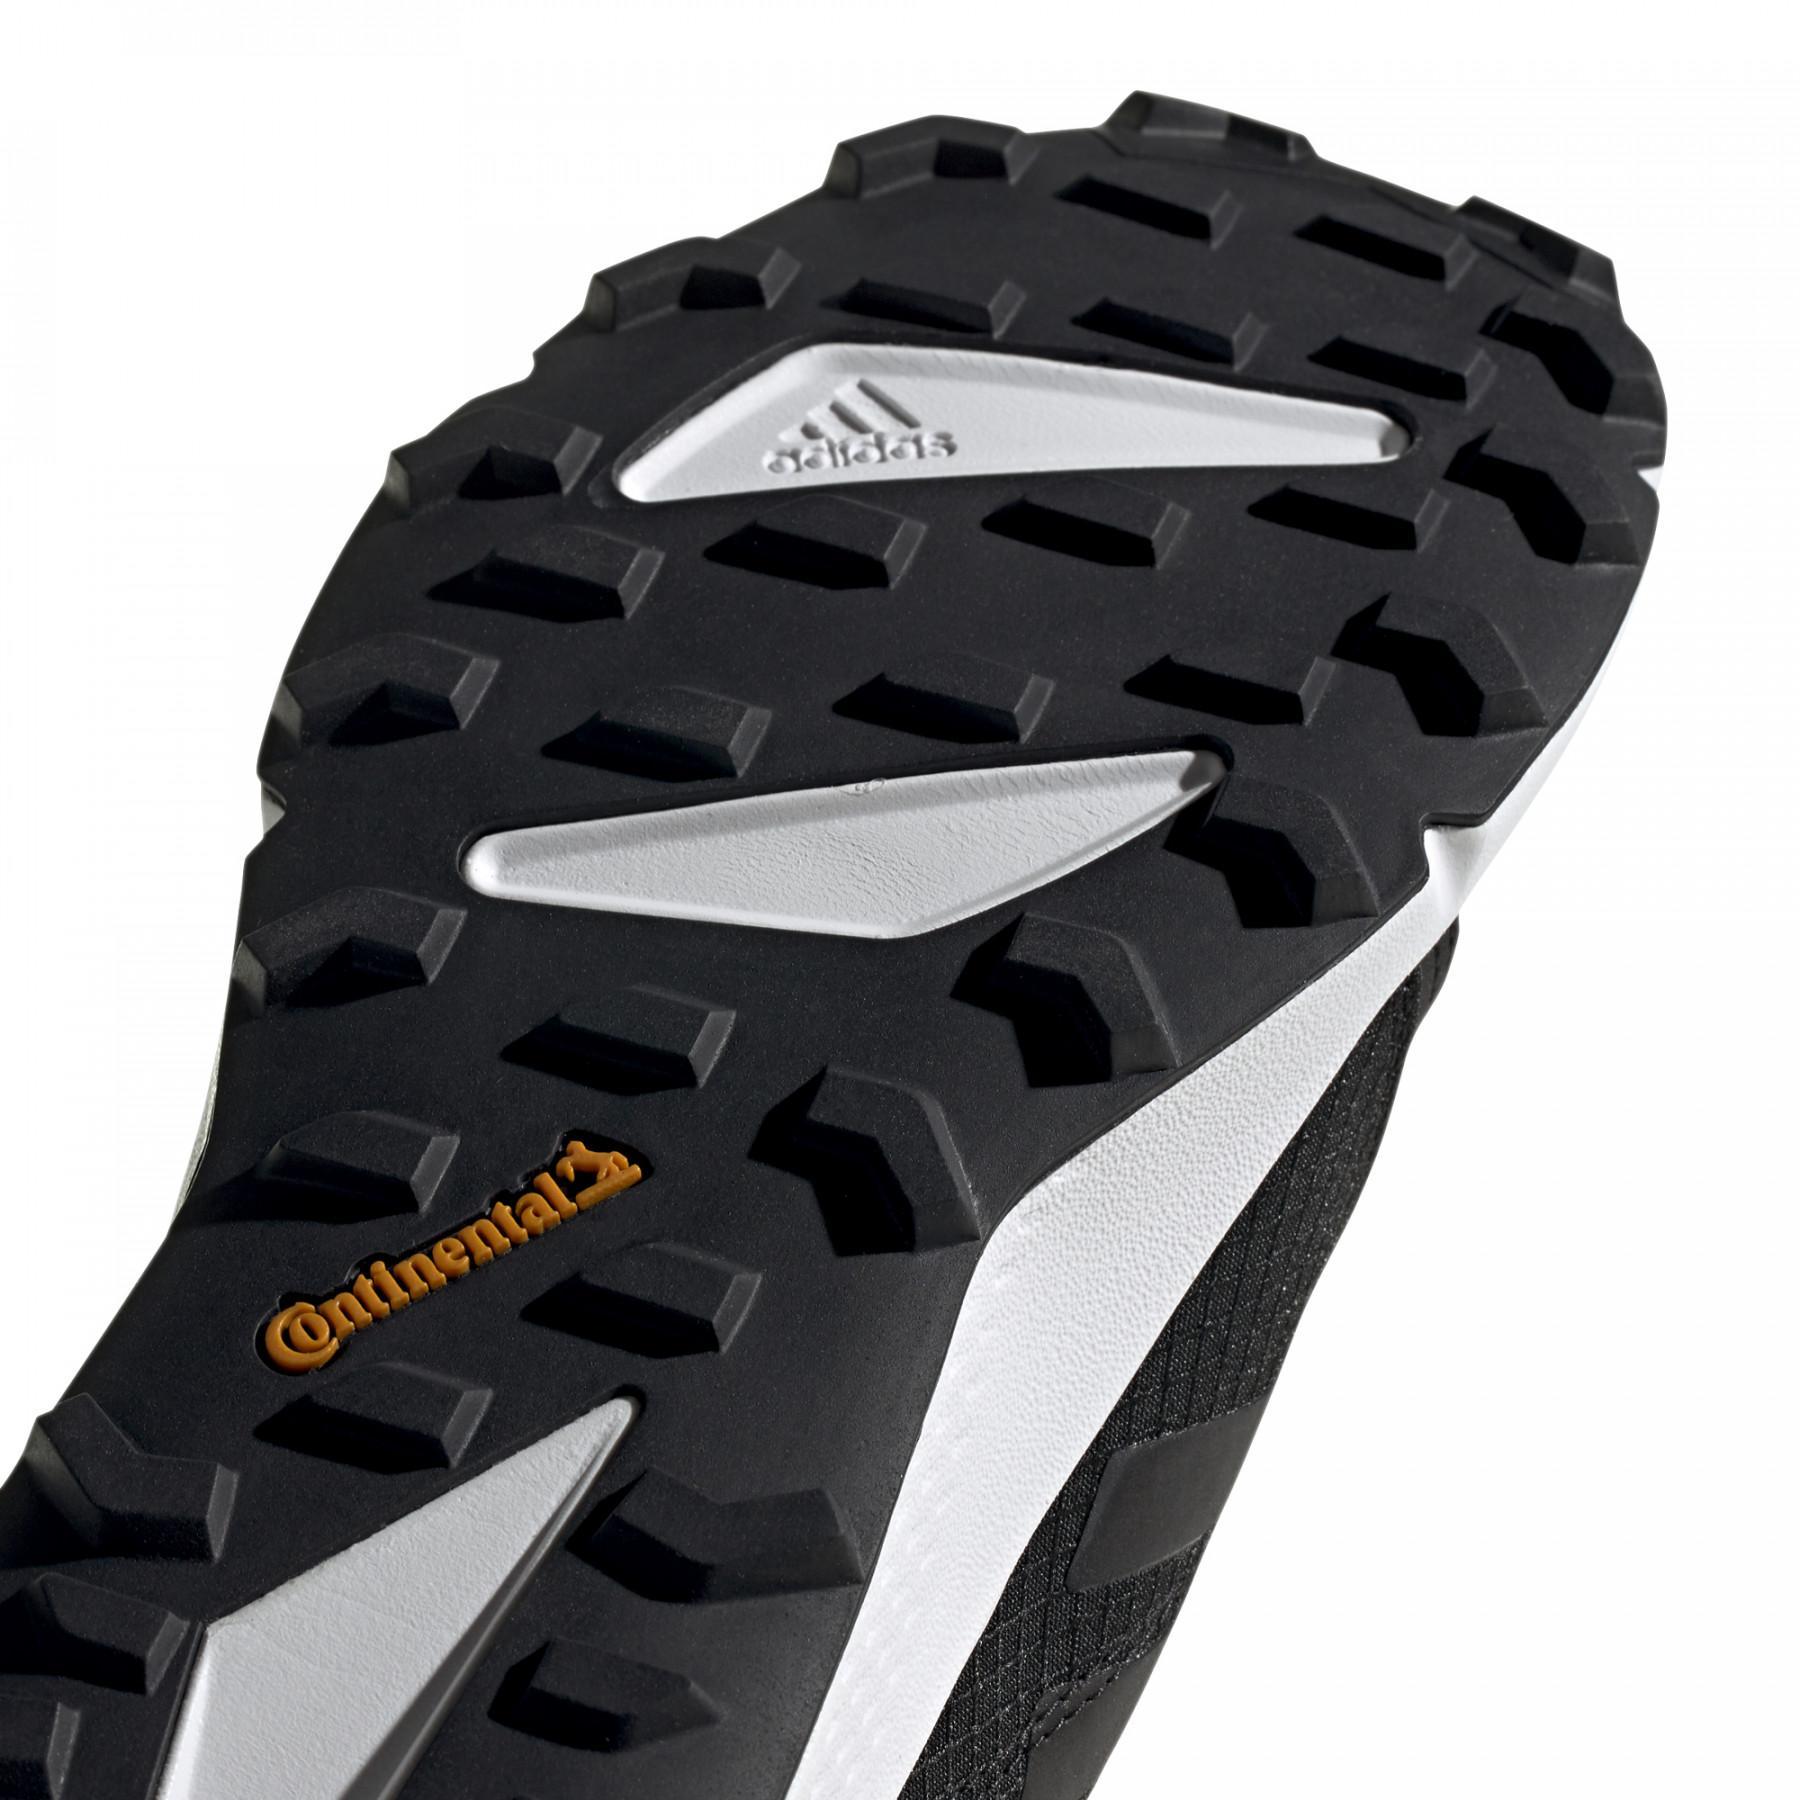 Trailrunning-Schuhe adidas Terrex Speed Gore-Tex Trail